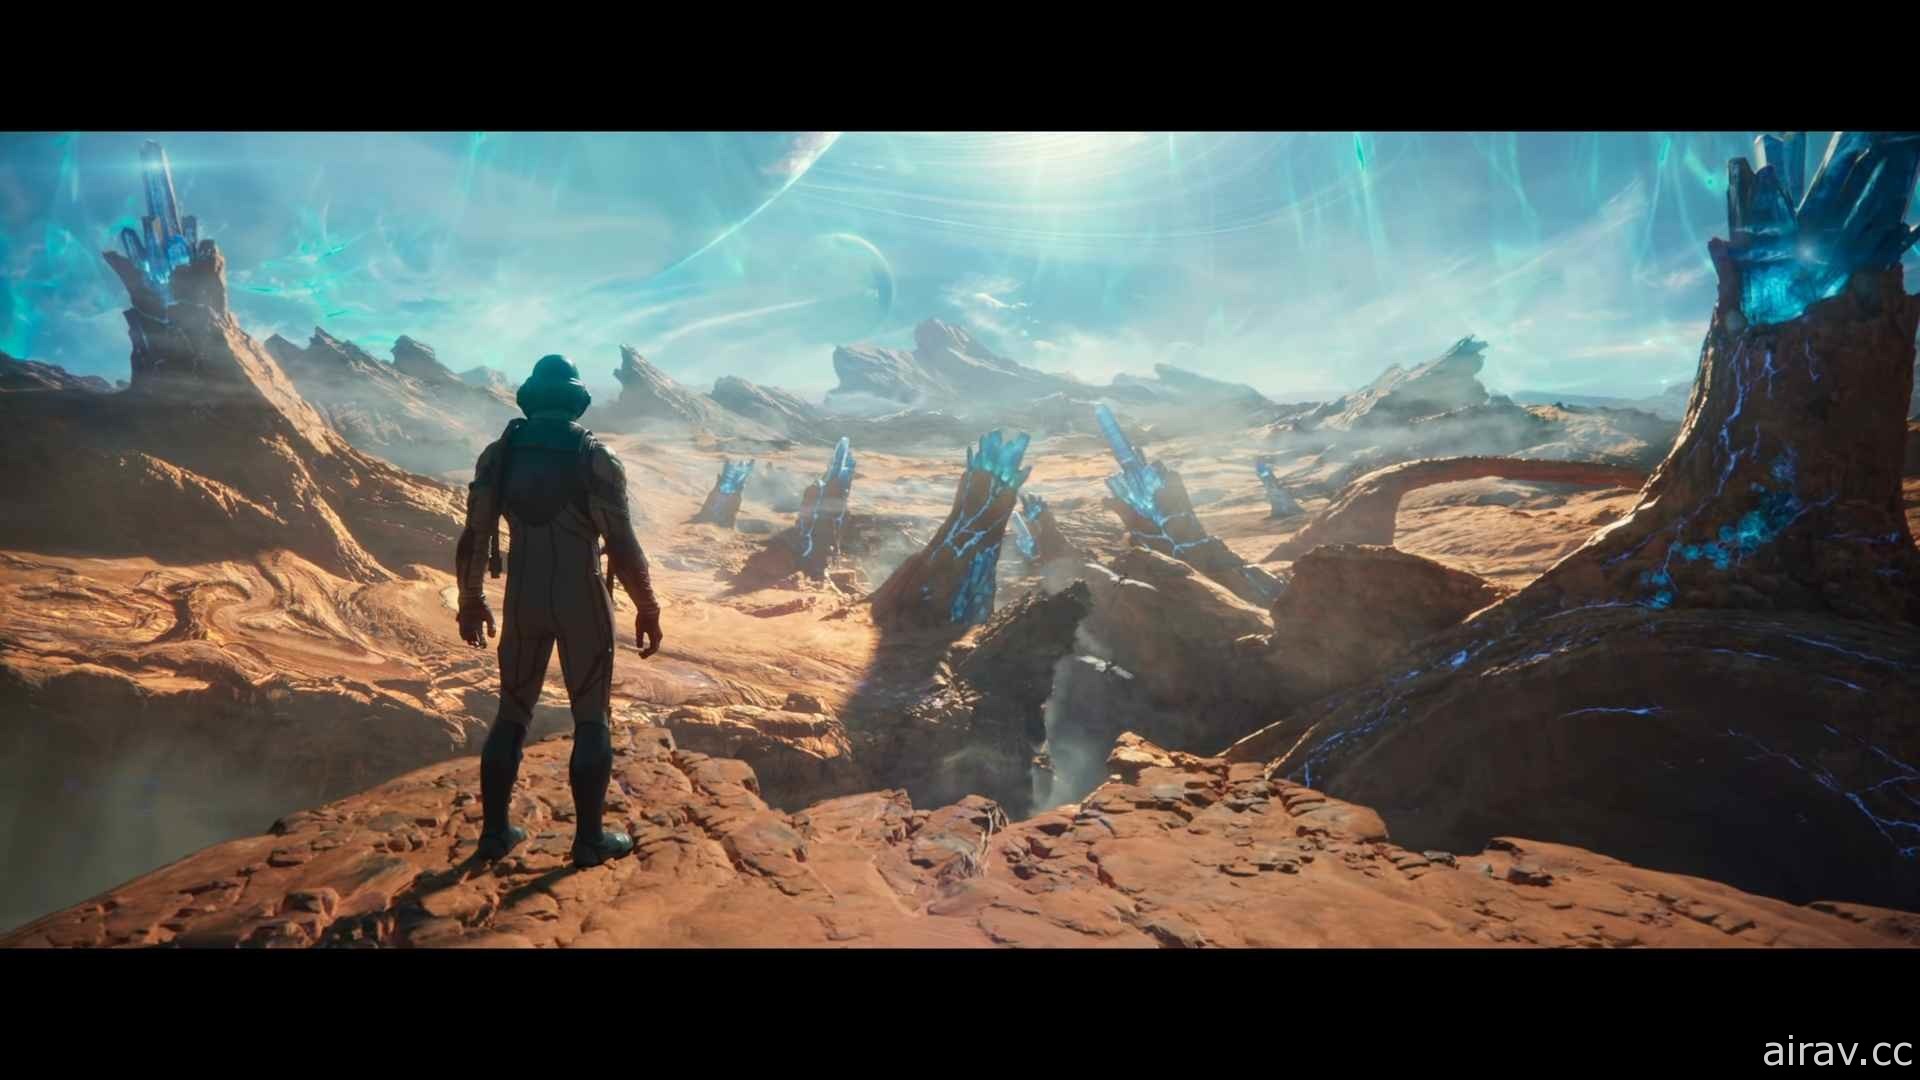 【E3 21】在壯闊的宇宙展開冒險《天外世界 2》釋出遊戲預告影片